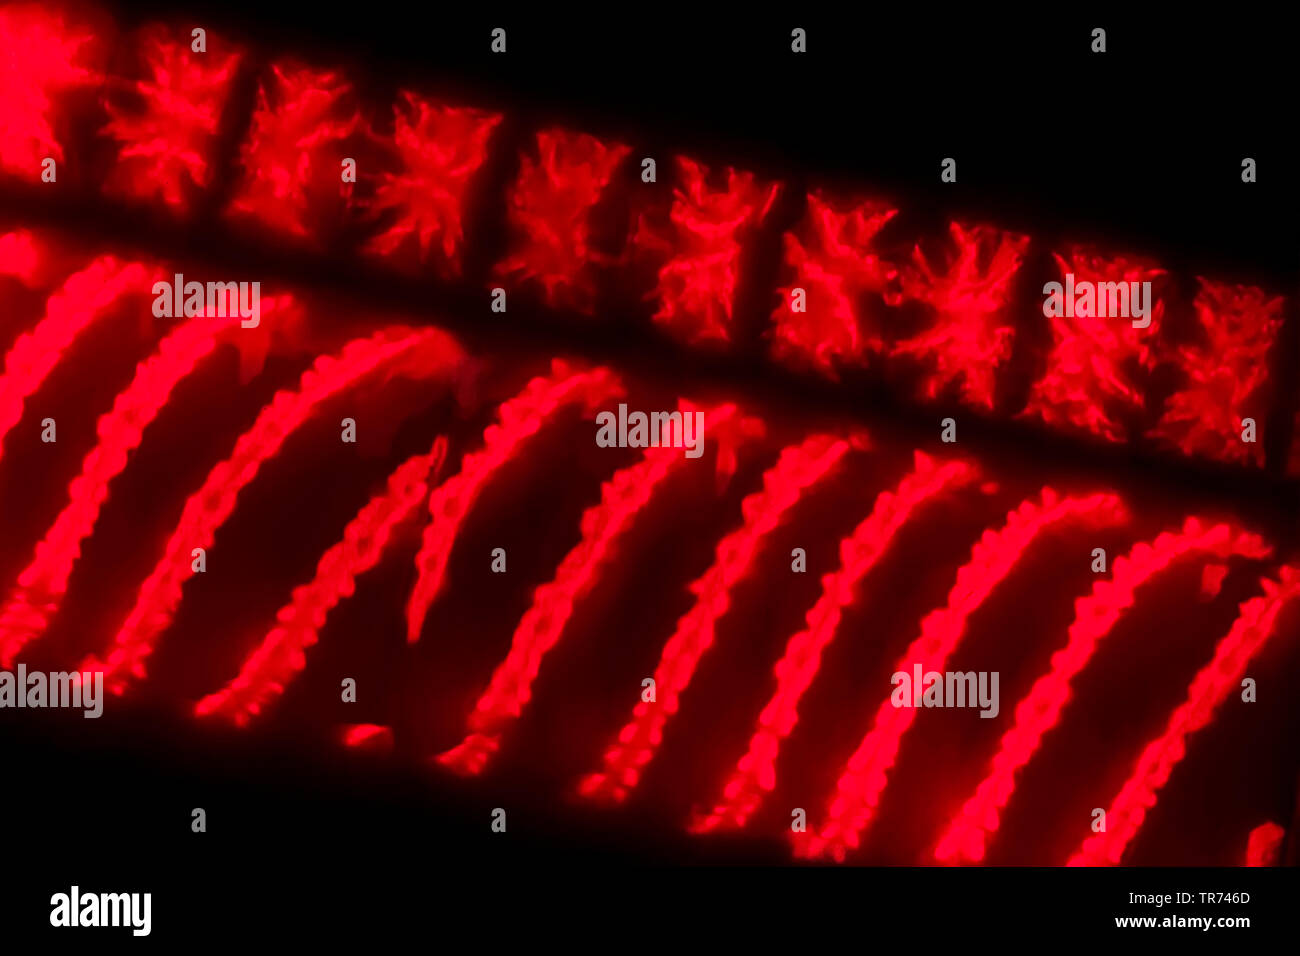 La soie de l'eau, mermaid's tresses, une couverture contre les mauvaises herbes (Spirogyra spec.), Image fluorescente de l'eau avec des soies, des chloroplastes en spirales x 140, Allemagne Banque D'Images